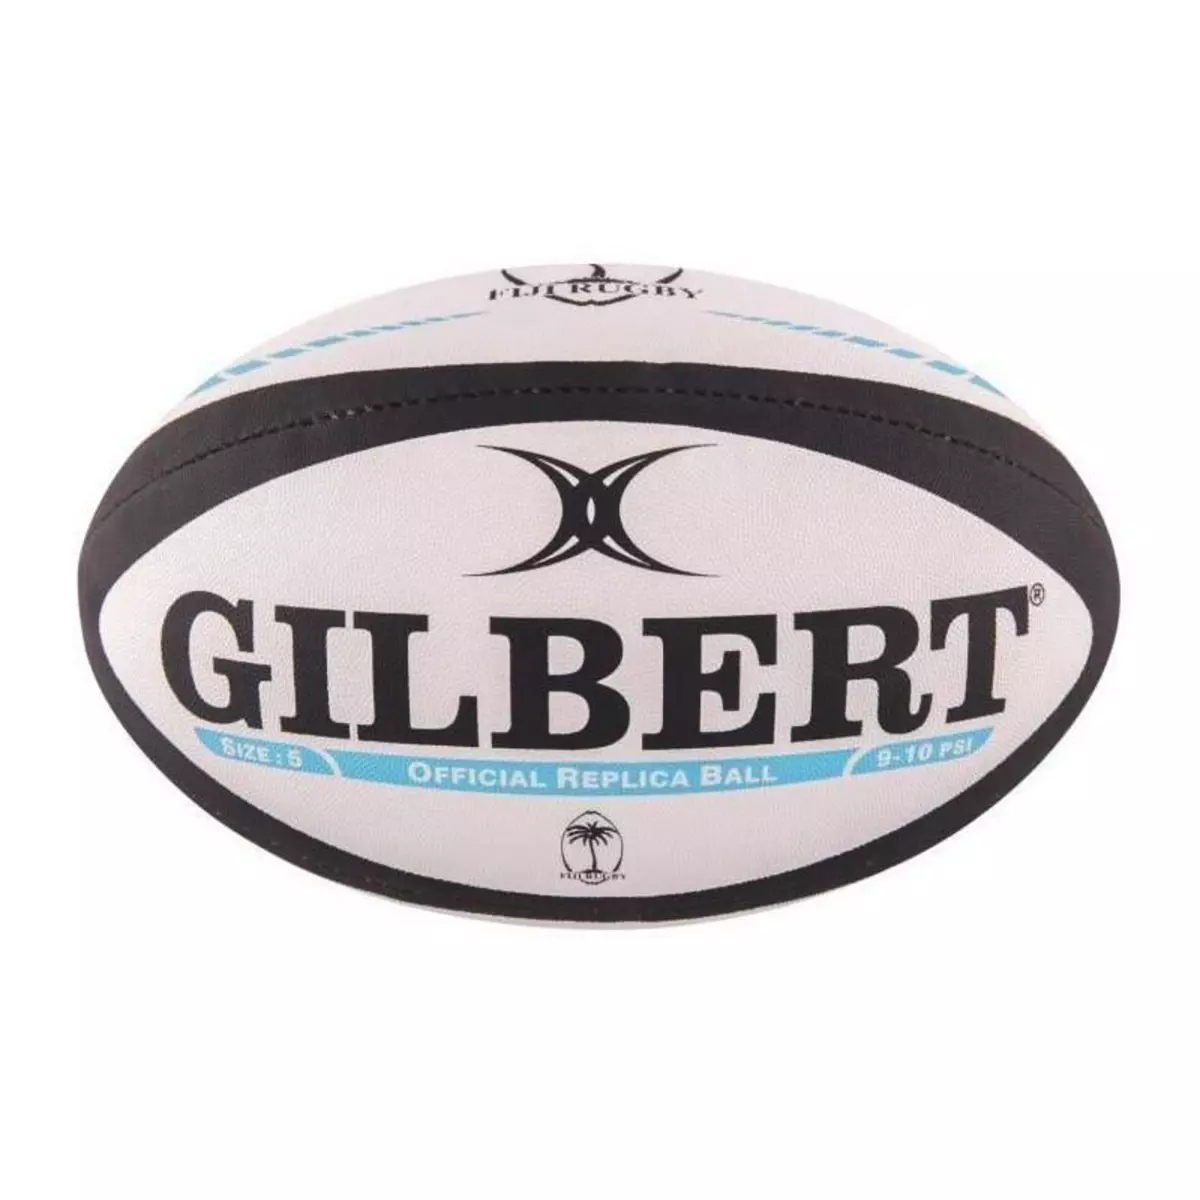 GILBERT GILBERT Ballon de rugby REPLICA - Fidji - Taille 5